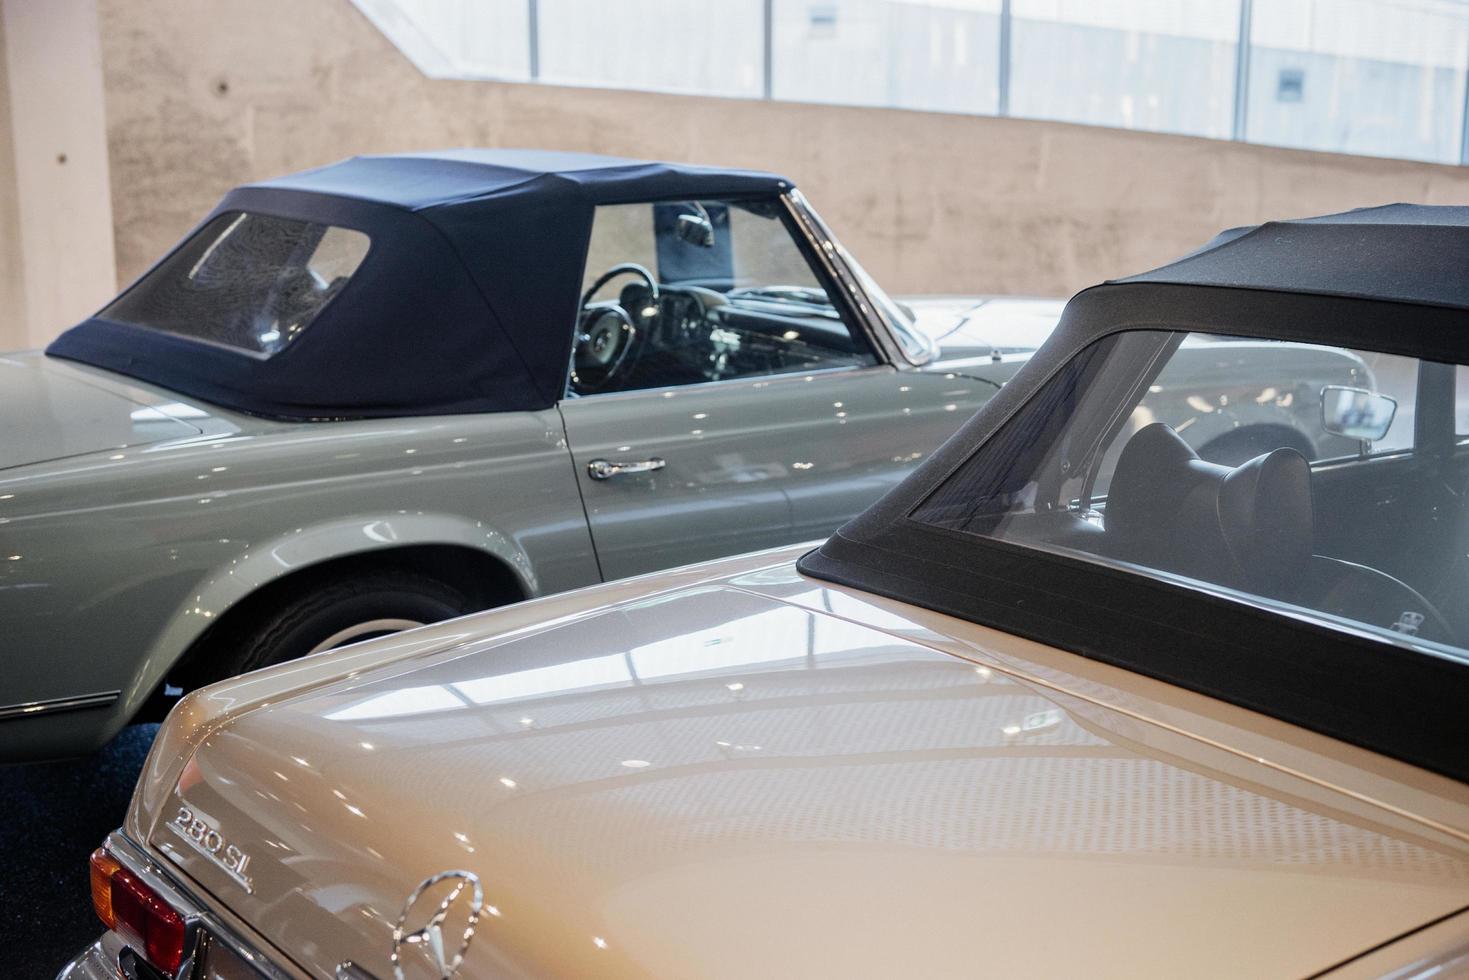 stuttgart, Tyskland - 16 oktober 2018 mercedes museum. snygga gamla retrobilar på bilmässan foto